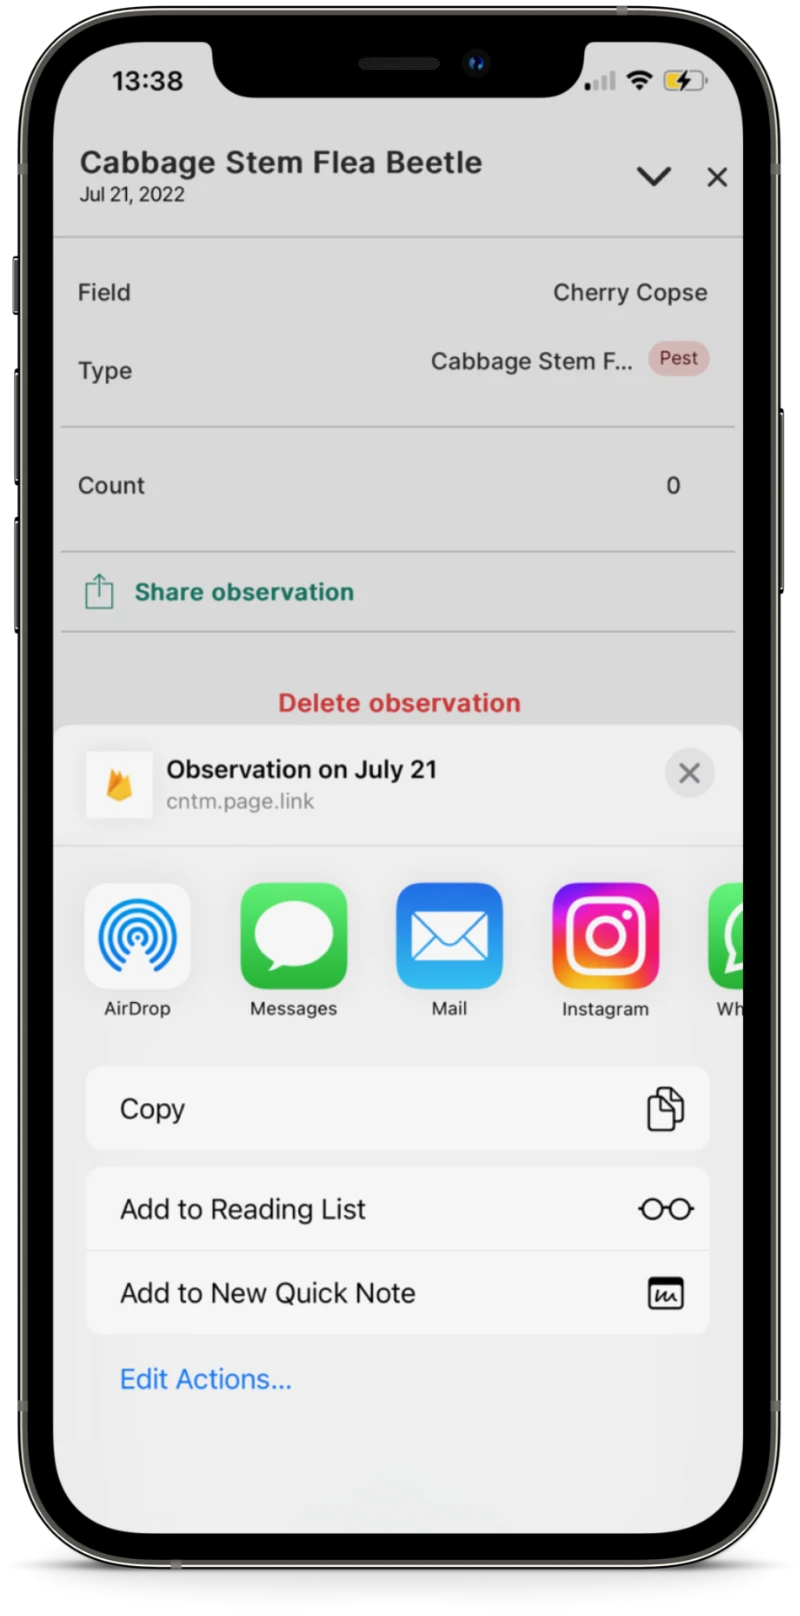 Origin Digital Contour Mobile Share Observations